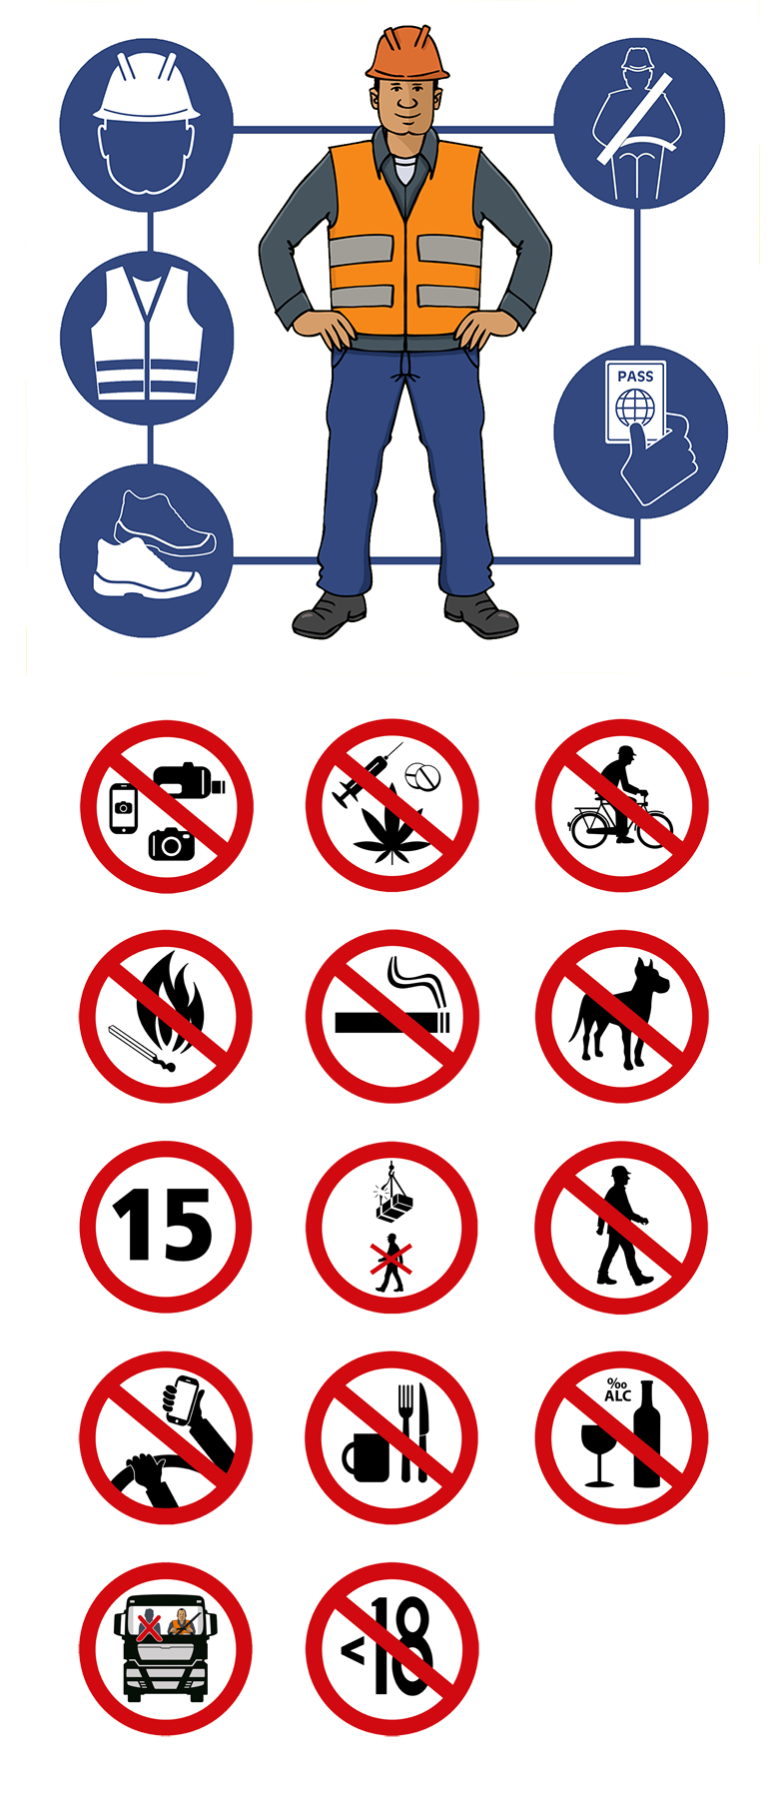 Veiligheidssymbolen / safety symbols